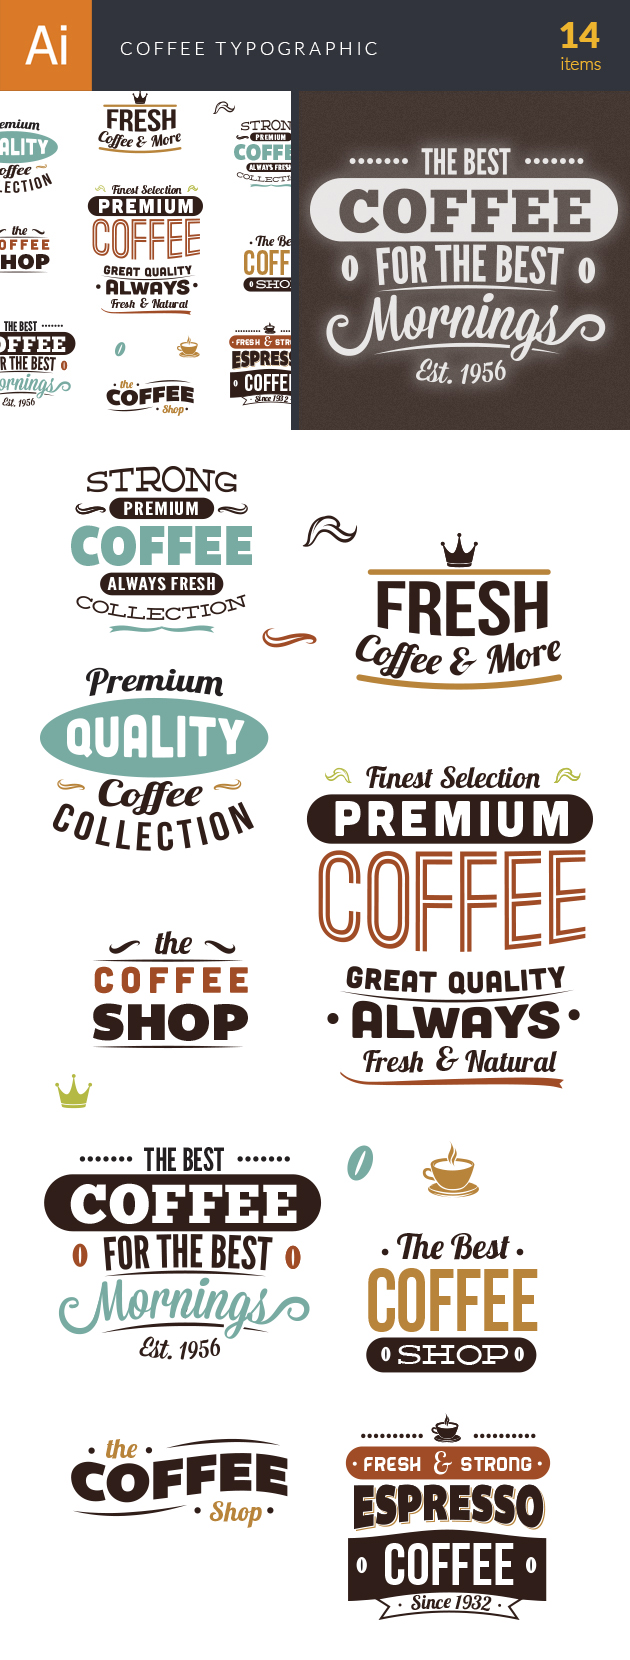 Coffee Typographic Elements Vector 2